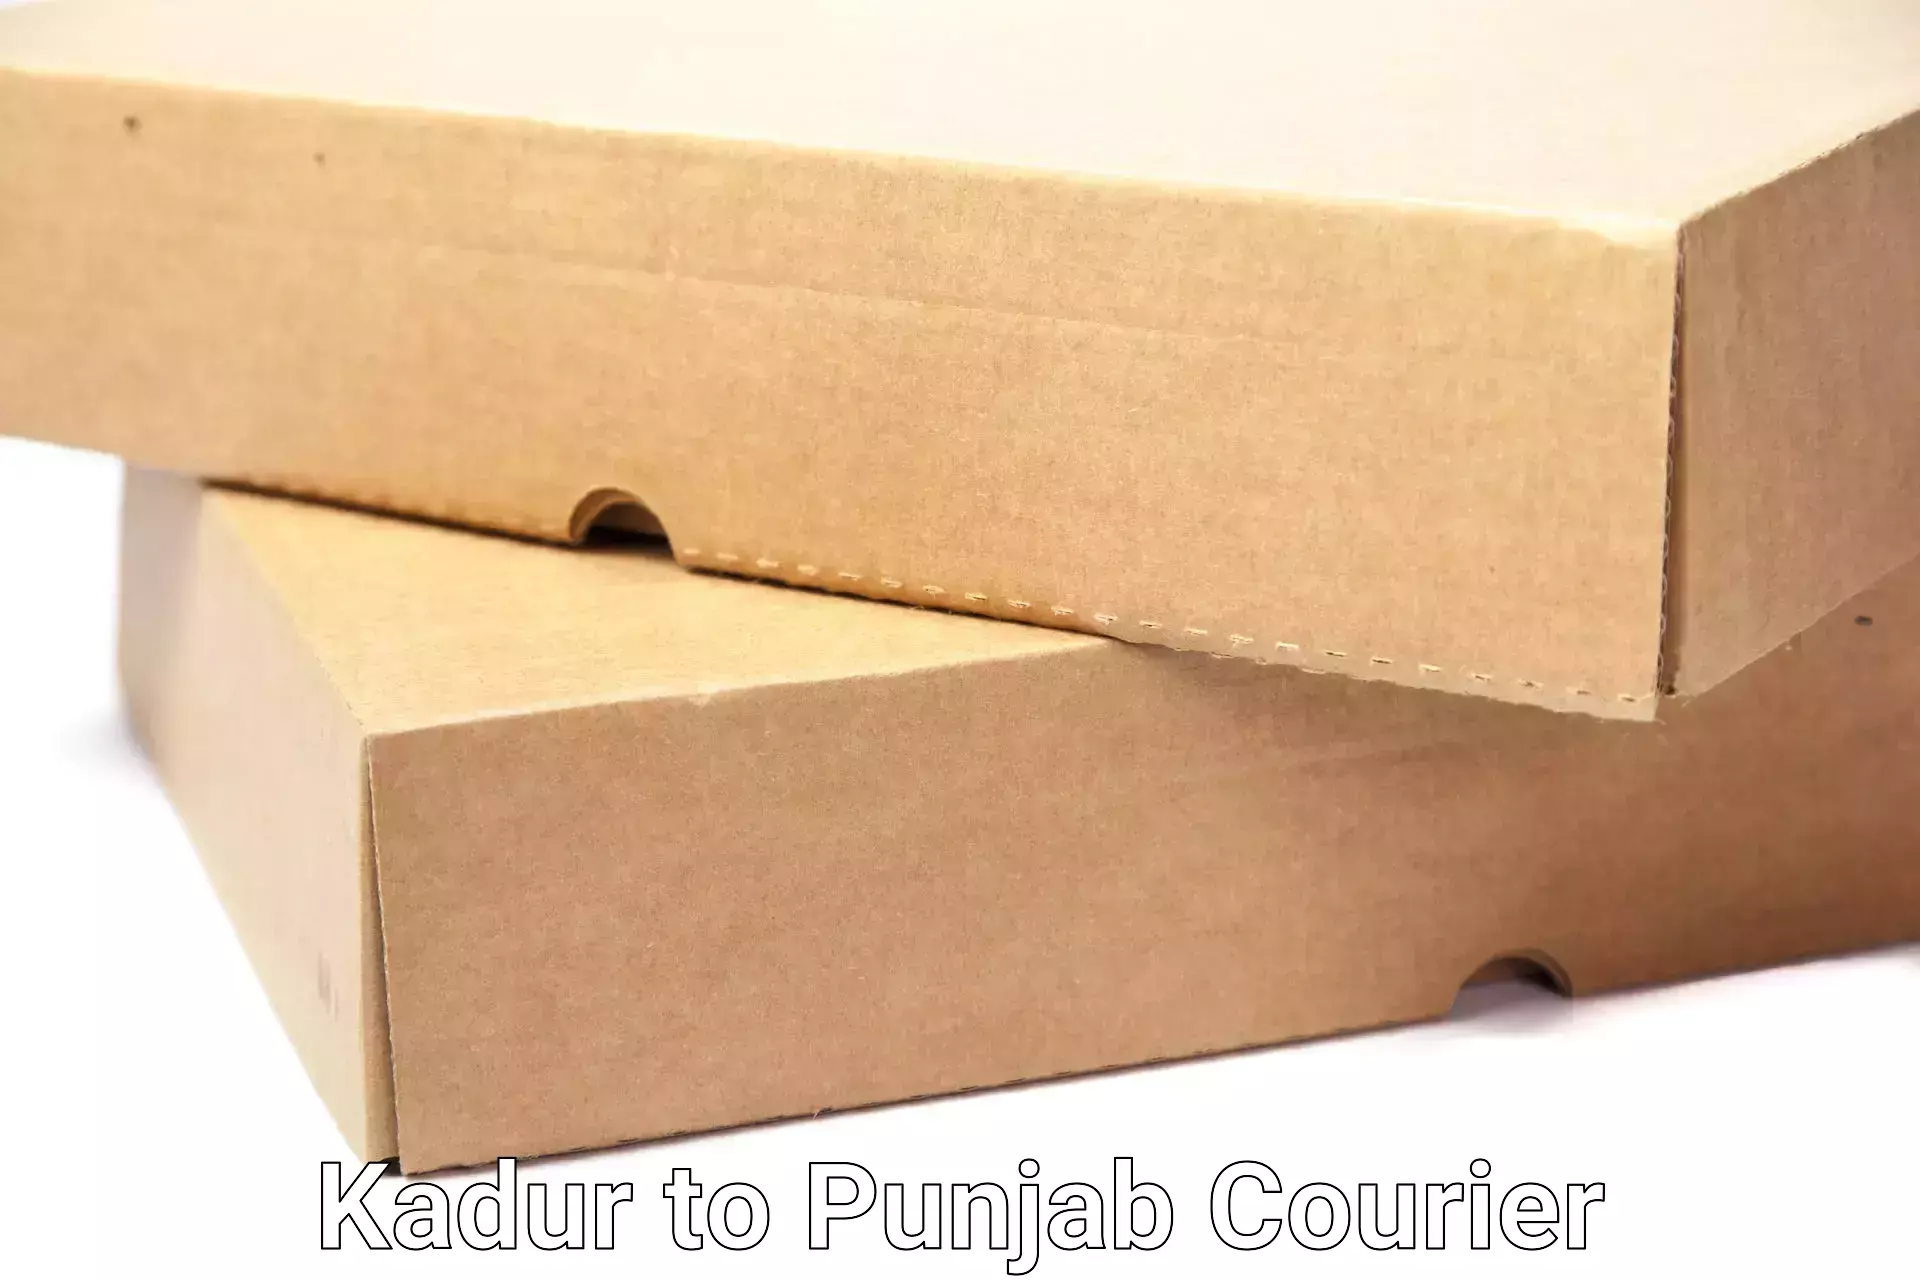 Stress-free household moving Kadur to Punjab